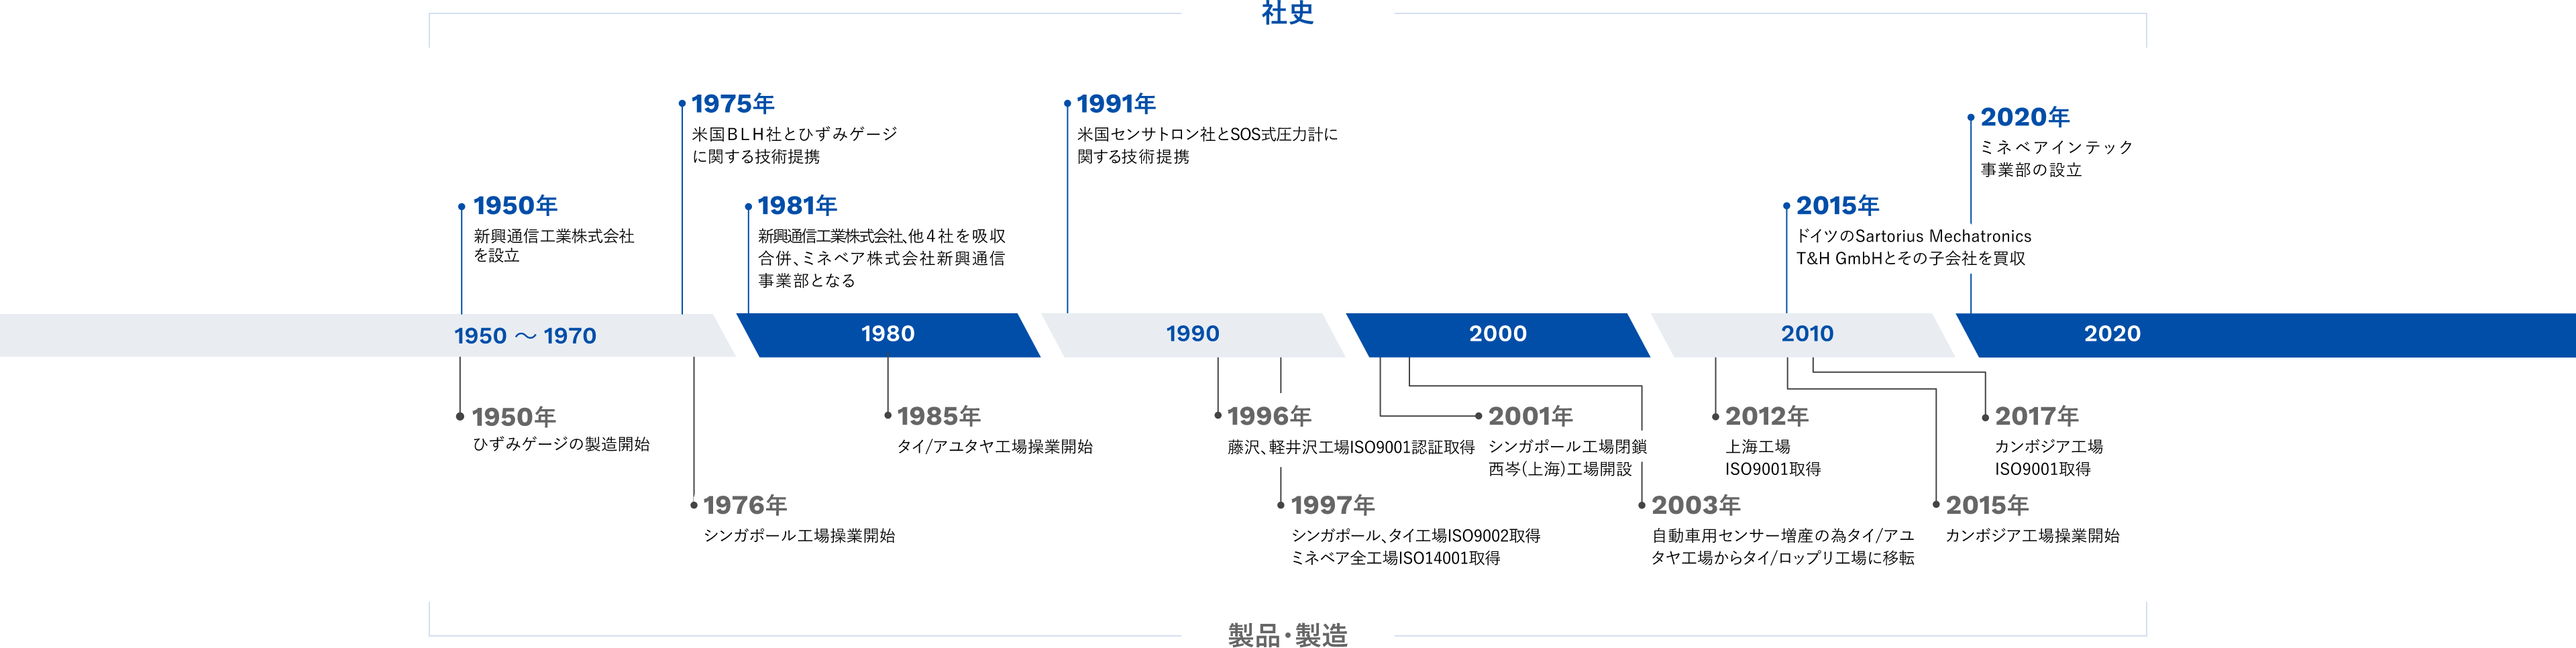 社史 1950年 新興通信工業株式会社を設立 1975年 米国BLH社とひずみゲージに関する技術提携 1981年 新興通信工業株式会社、他4社を吸収合併、ミネベア株式会社新興通信事業部となる 1991年 米国センサトロン社とSOS式圧力計に関する技術提携 2015年 ドイツのSatorius Mechatronics T&H GmbHとその子会社を買収 2020年 ミネベアインテック事業部の設立 製品・製造 1950年 ひずみゲージの製造開始 1976年 シンガポール工場操業開始 1985年 タイ / アユタヤ工場操業開始 1996年 藤沢、軽井沢工場ISO9001認証取得 1997年 シンガポール、タイ工場ISO9002認証取得 ミネベア全工場ISO14001取得 2001年 シンガポール工場閉鎖 西岑（上海）工場開設 2003年 自動車用センサー増産の為タイ / アユタヤ工場からタイ / ロップリ工場に移転 2012年 上海工場ISO9001認証取得 2015年 カンボジア工場操業開始 2017年 カンボジア工場ISO9001認証取得